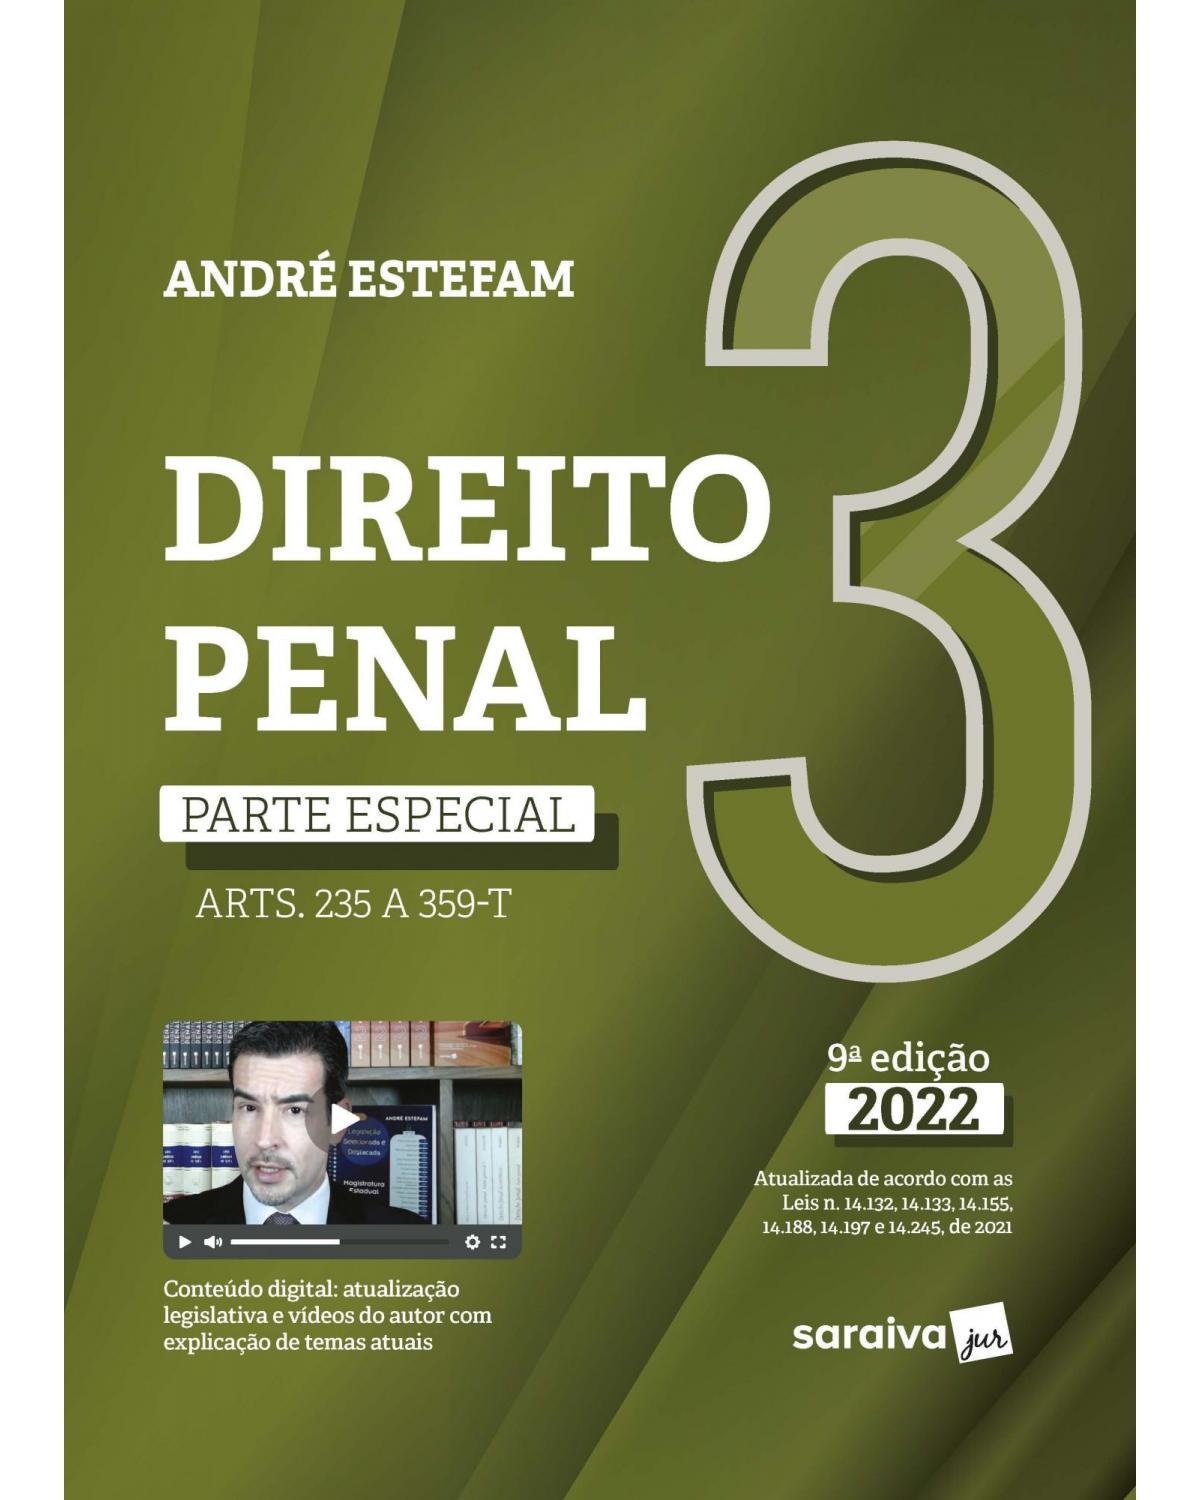 Direito penal - Volume 3: parte especial (arts. 235 a 359-T) - 9ª Edição | 2022